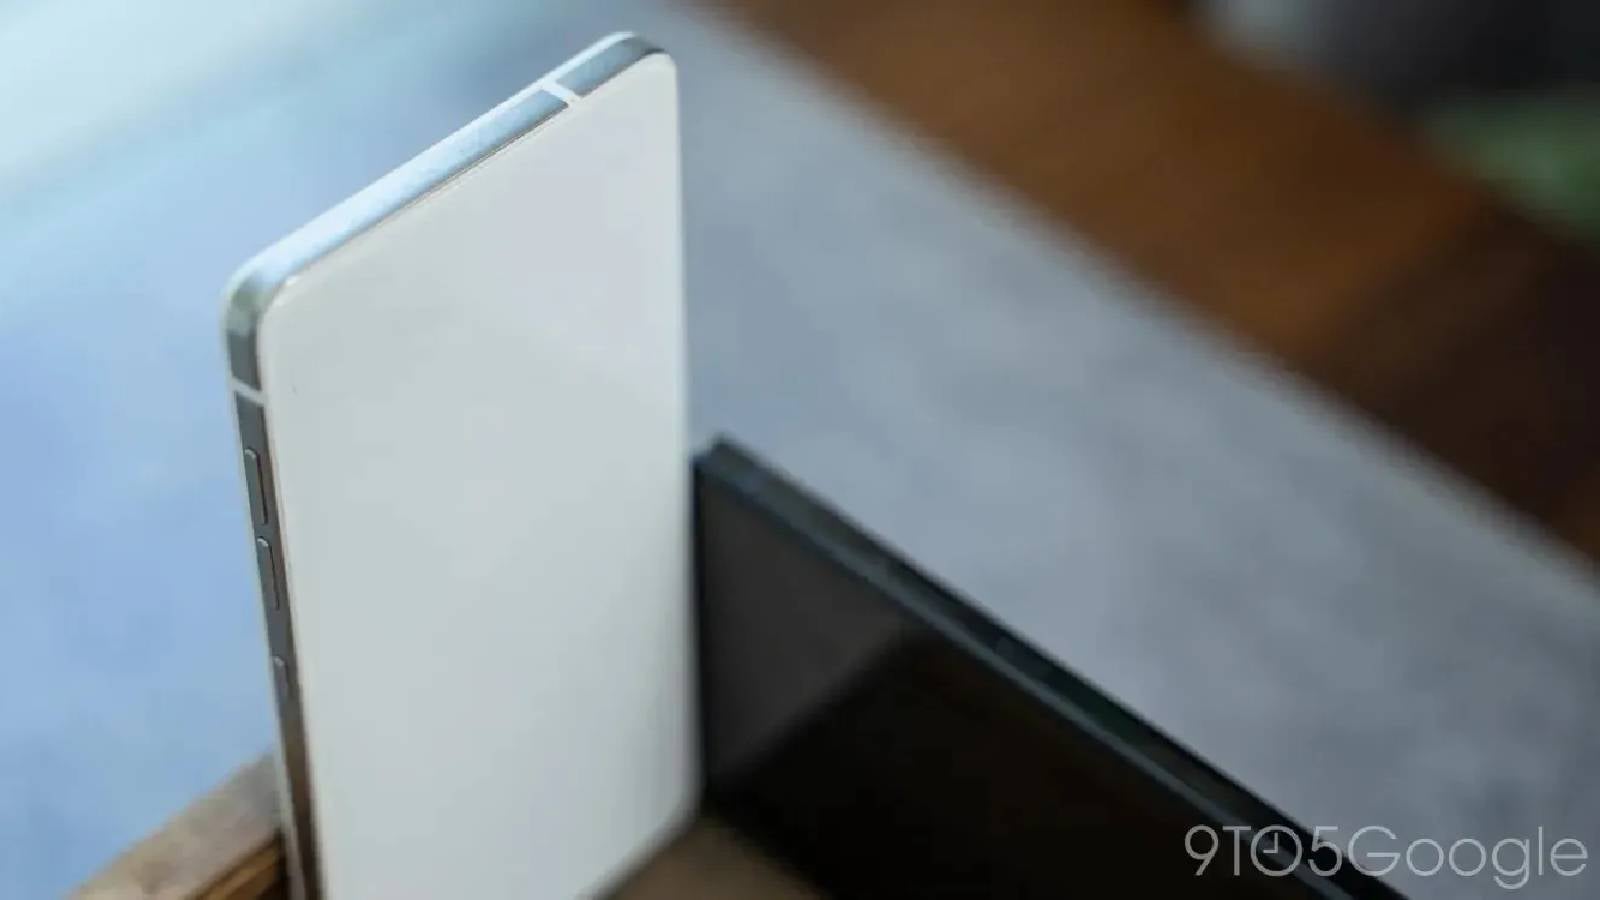 Die glänzenden Titanseiten des iPhone 16 Pro könnten so aussehen – Gerüchten zufolge soll das iPhone 16 Pro glänzender sein und ein Bild veranschaulicht, wie der Rahmen aussehen könnte